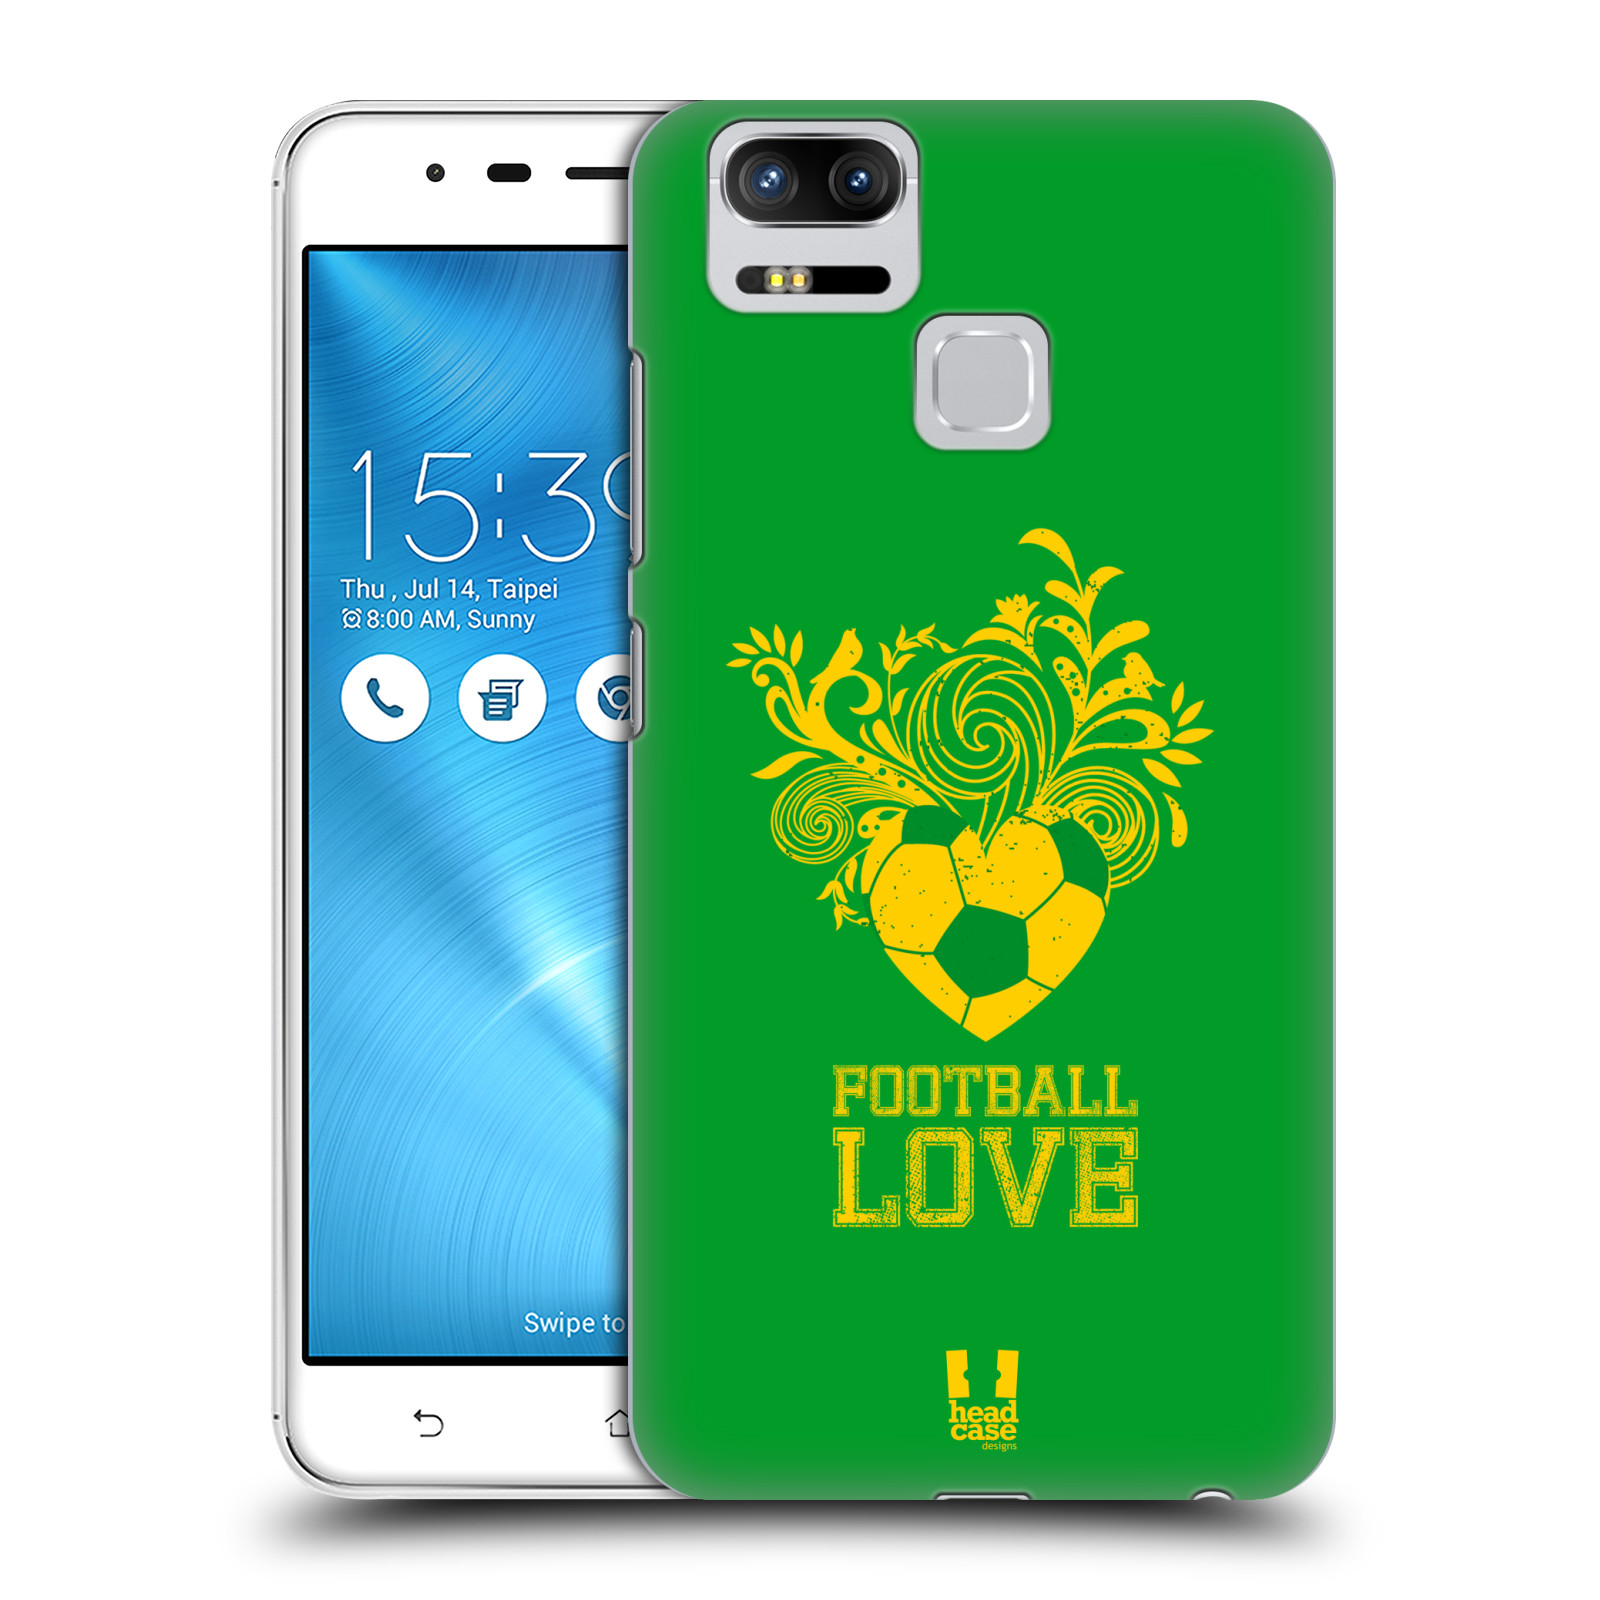 HEAD CASE plastový obal na mobil Asus Zenfone 3 Zoom ZE553KL Sport fotbalová láska zelená barva